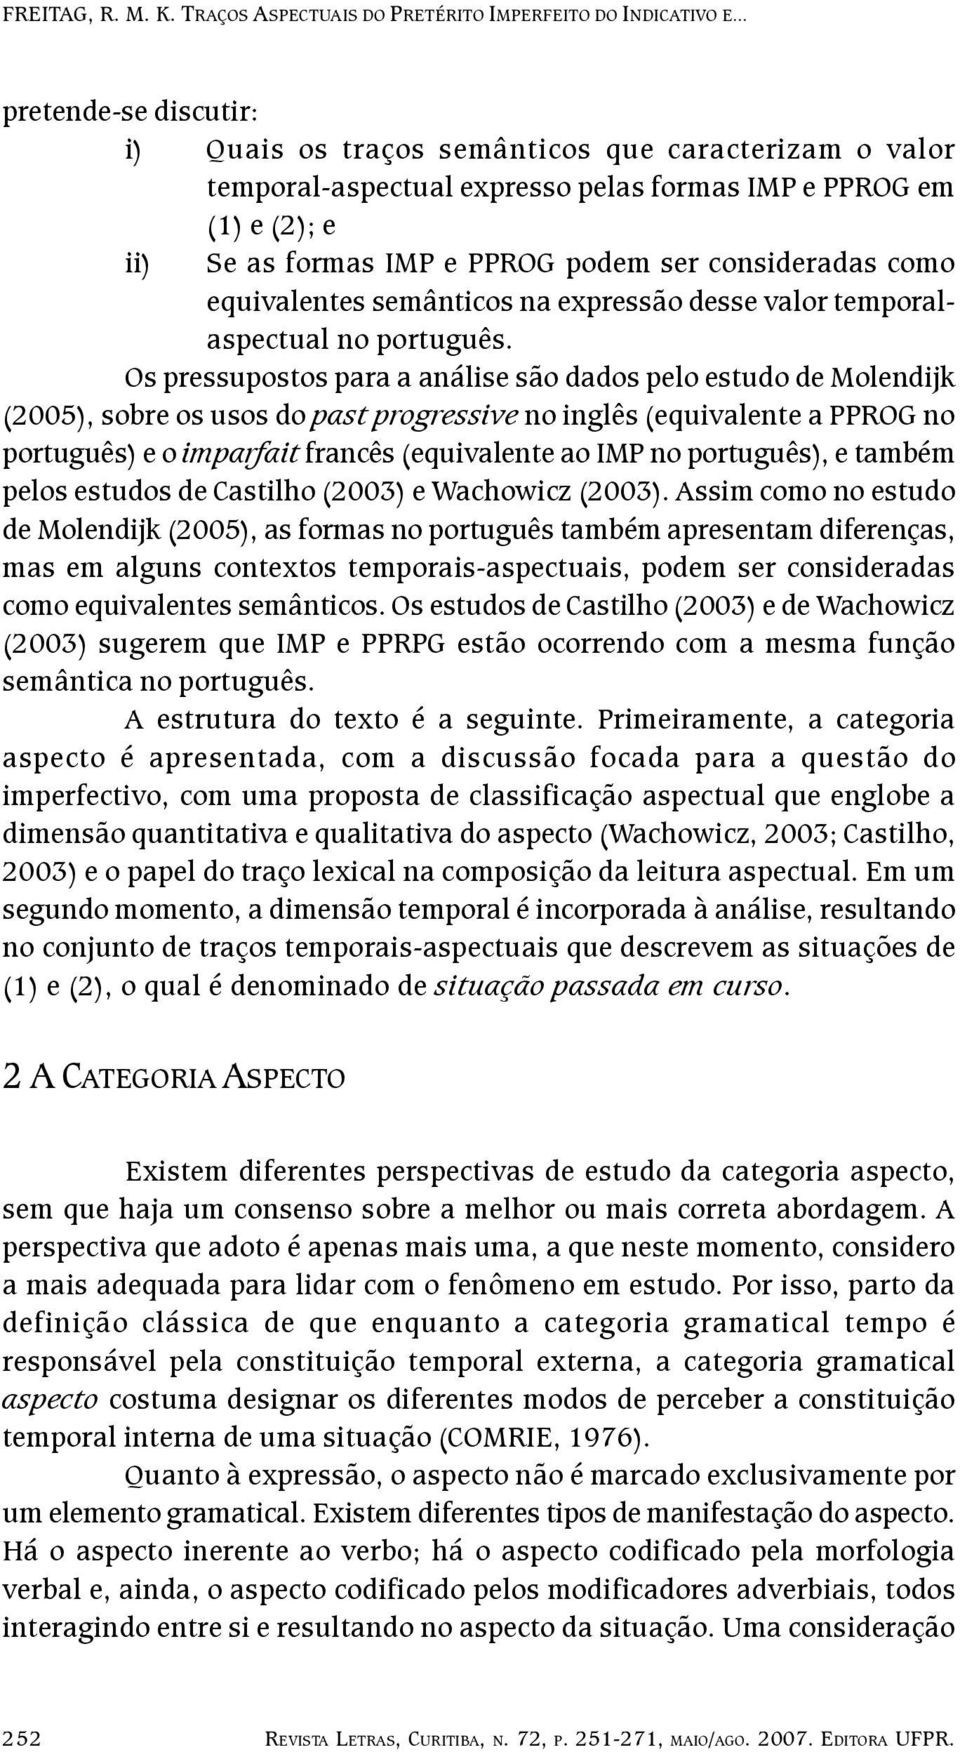 Os pressupostos para a análise são dados pelo estudo de Molendijk (2005), sobre os usos do past progressive no inglês (equivalente a PPROG no português) e o imparfait francês (equivalente ao IMP no